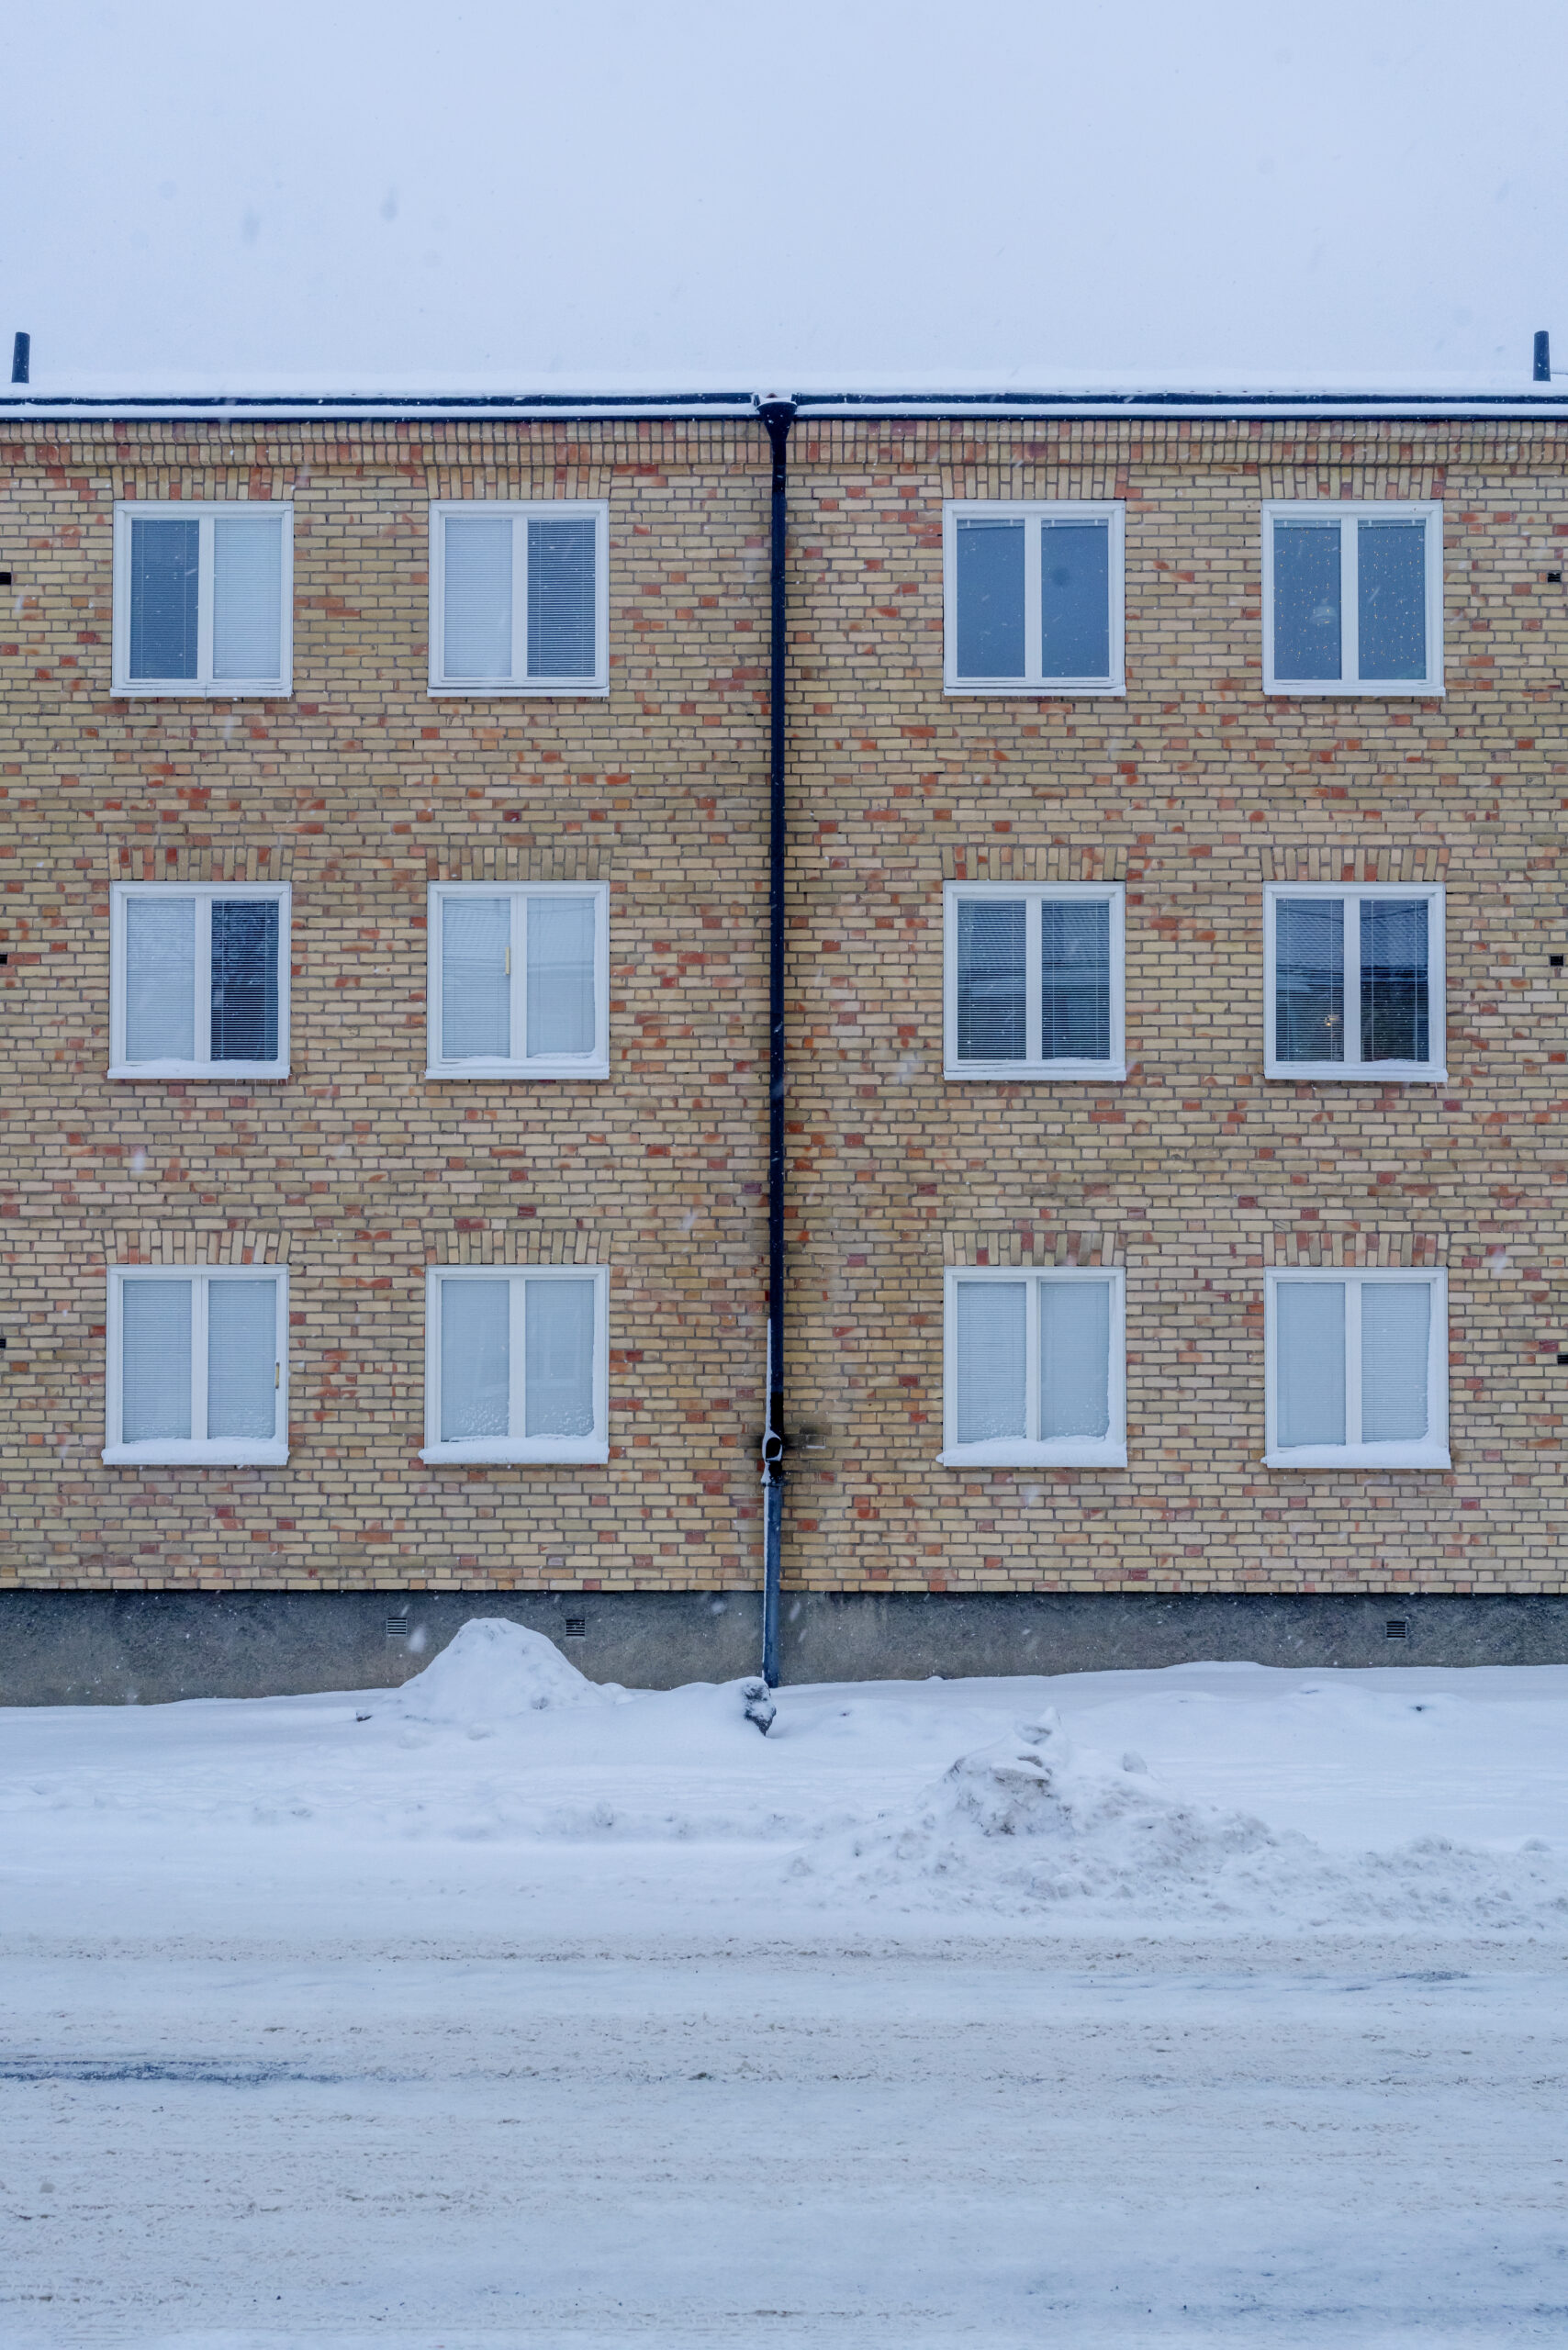 Sweden building in winter